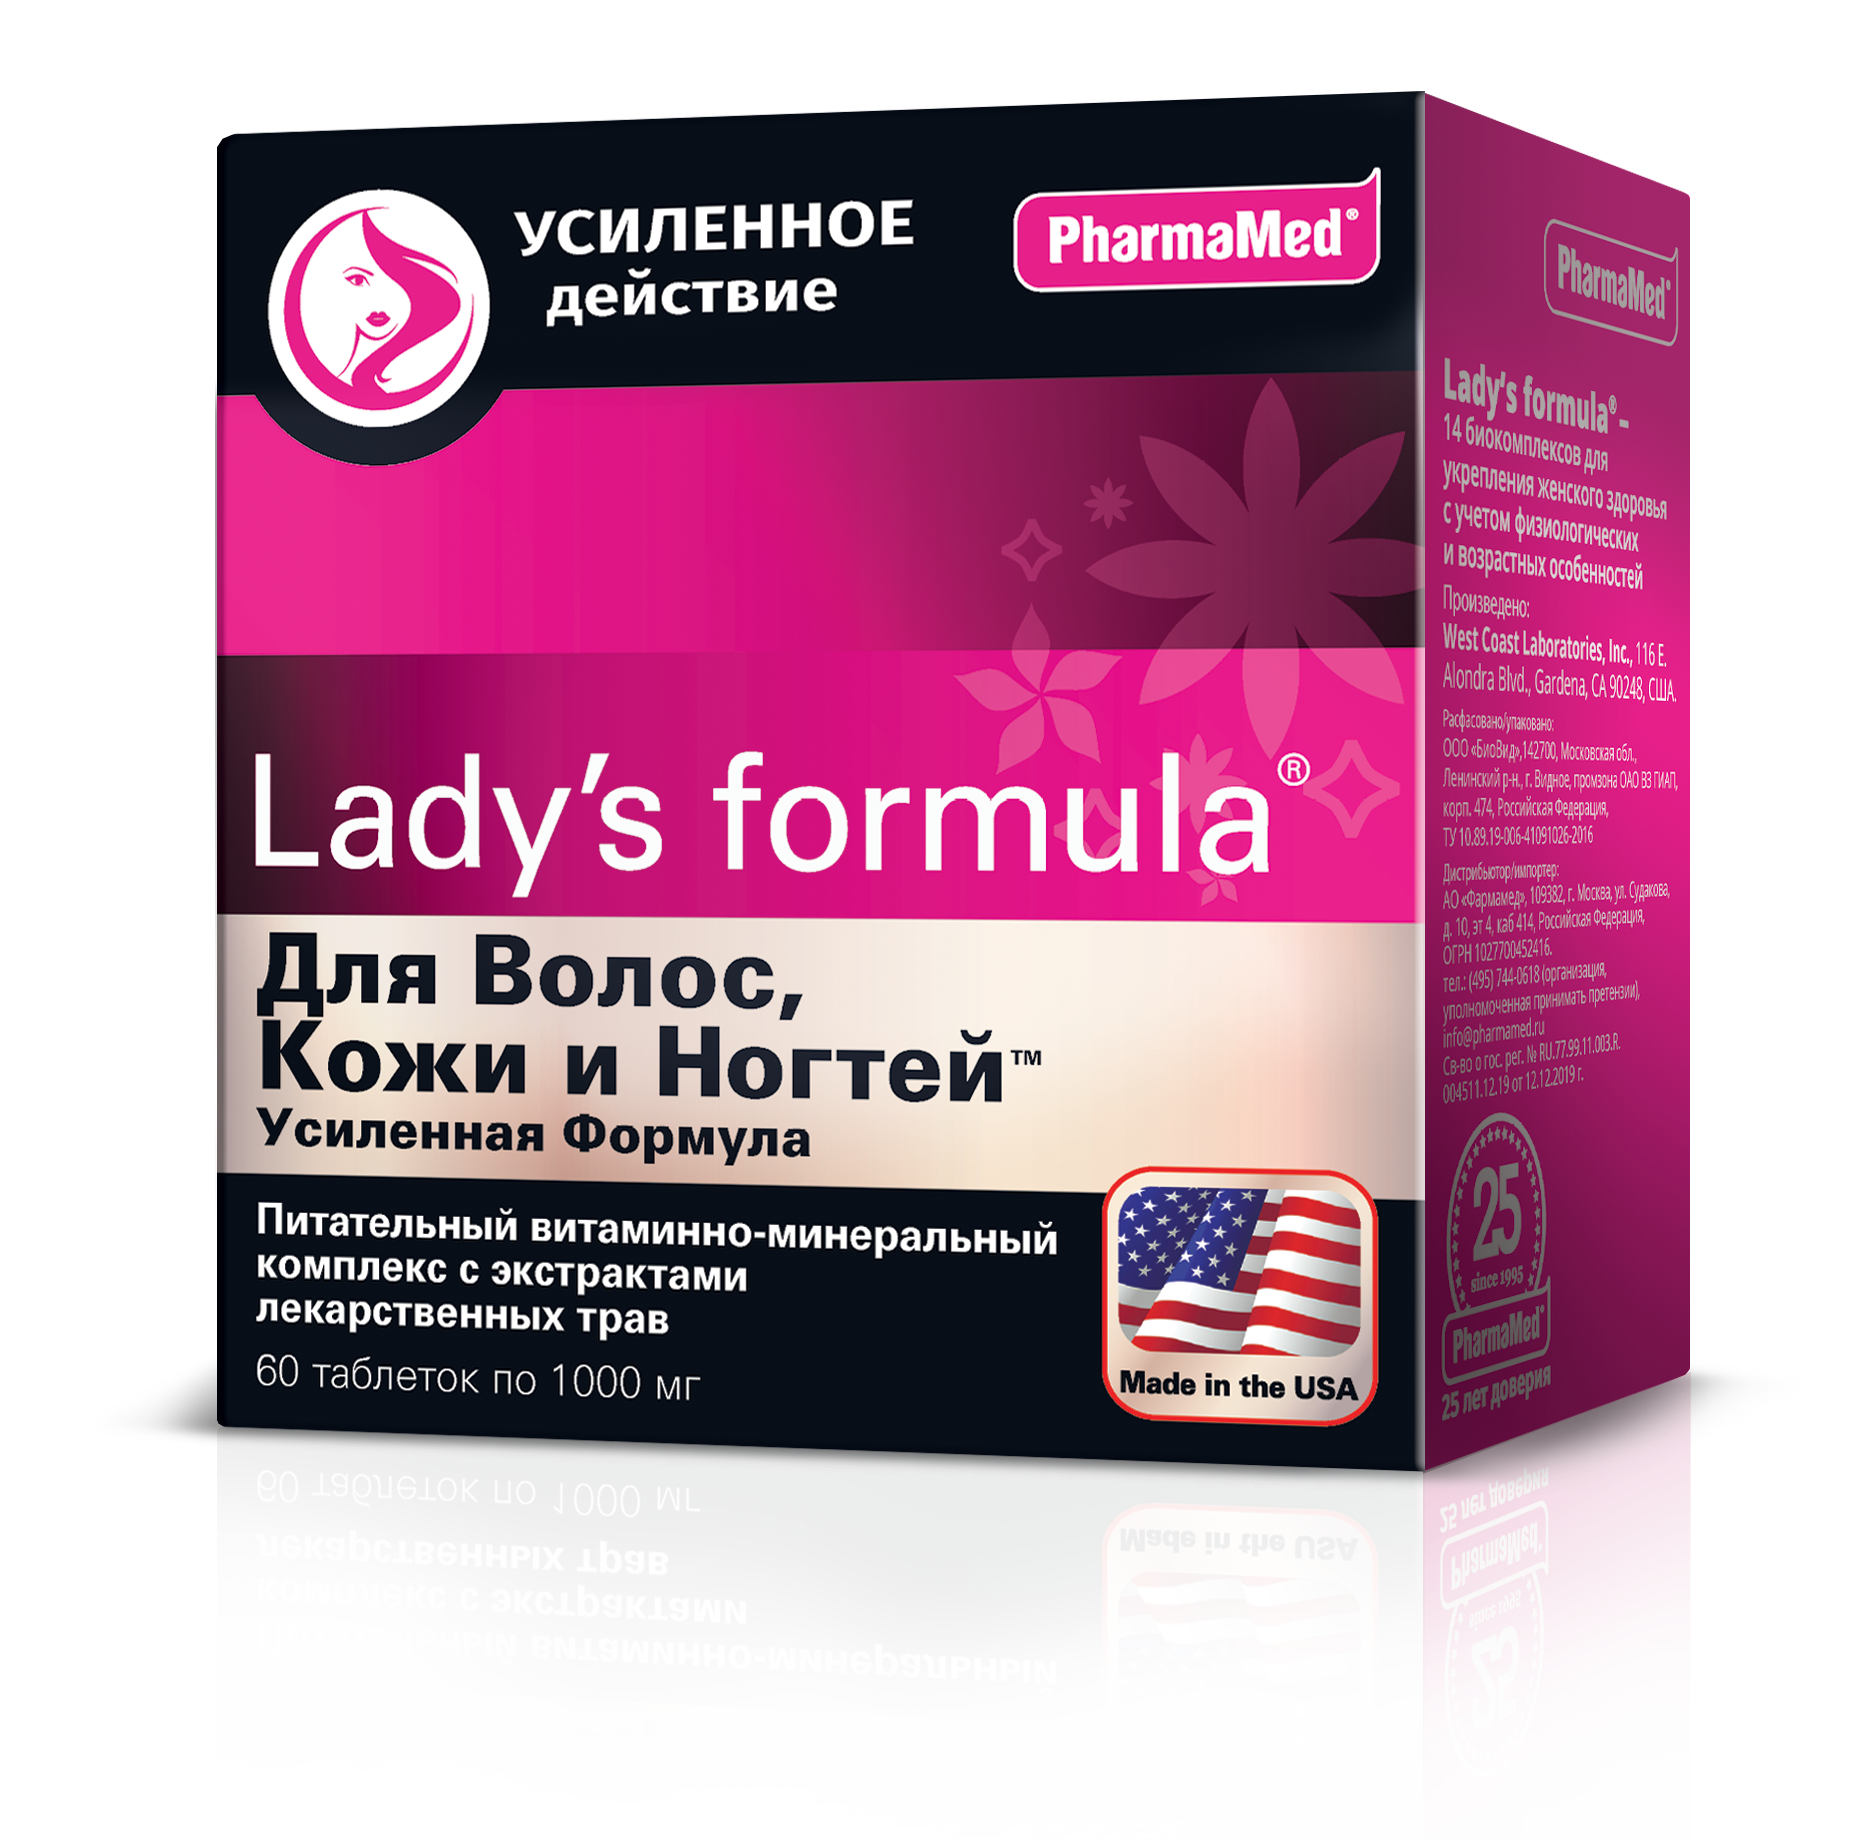 Lady's formula Для волос, кожи и ногтей Усиленная формула, таблетки 1000 мг, 60 шт. prosept средство усиленного действия bath acid для удаления ржавчины и минеральных отложений 1000